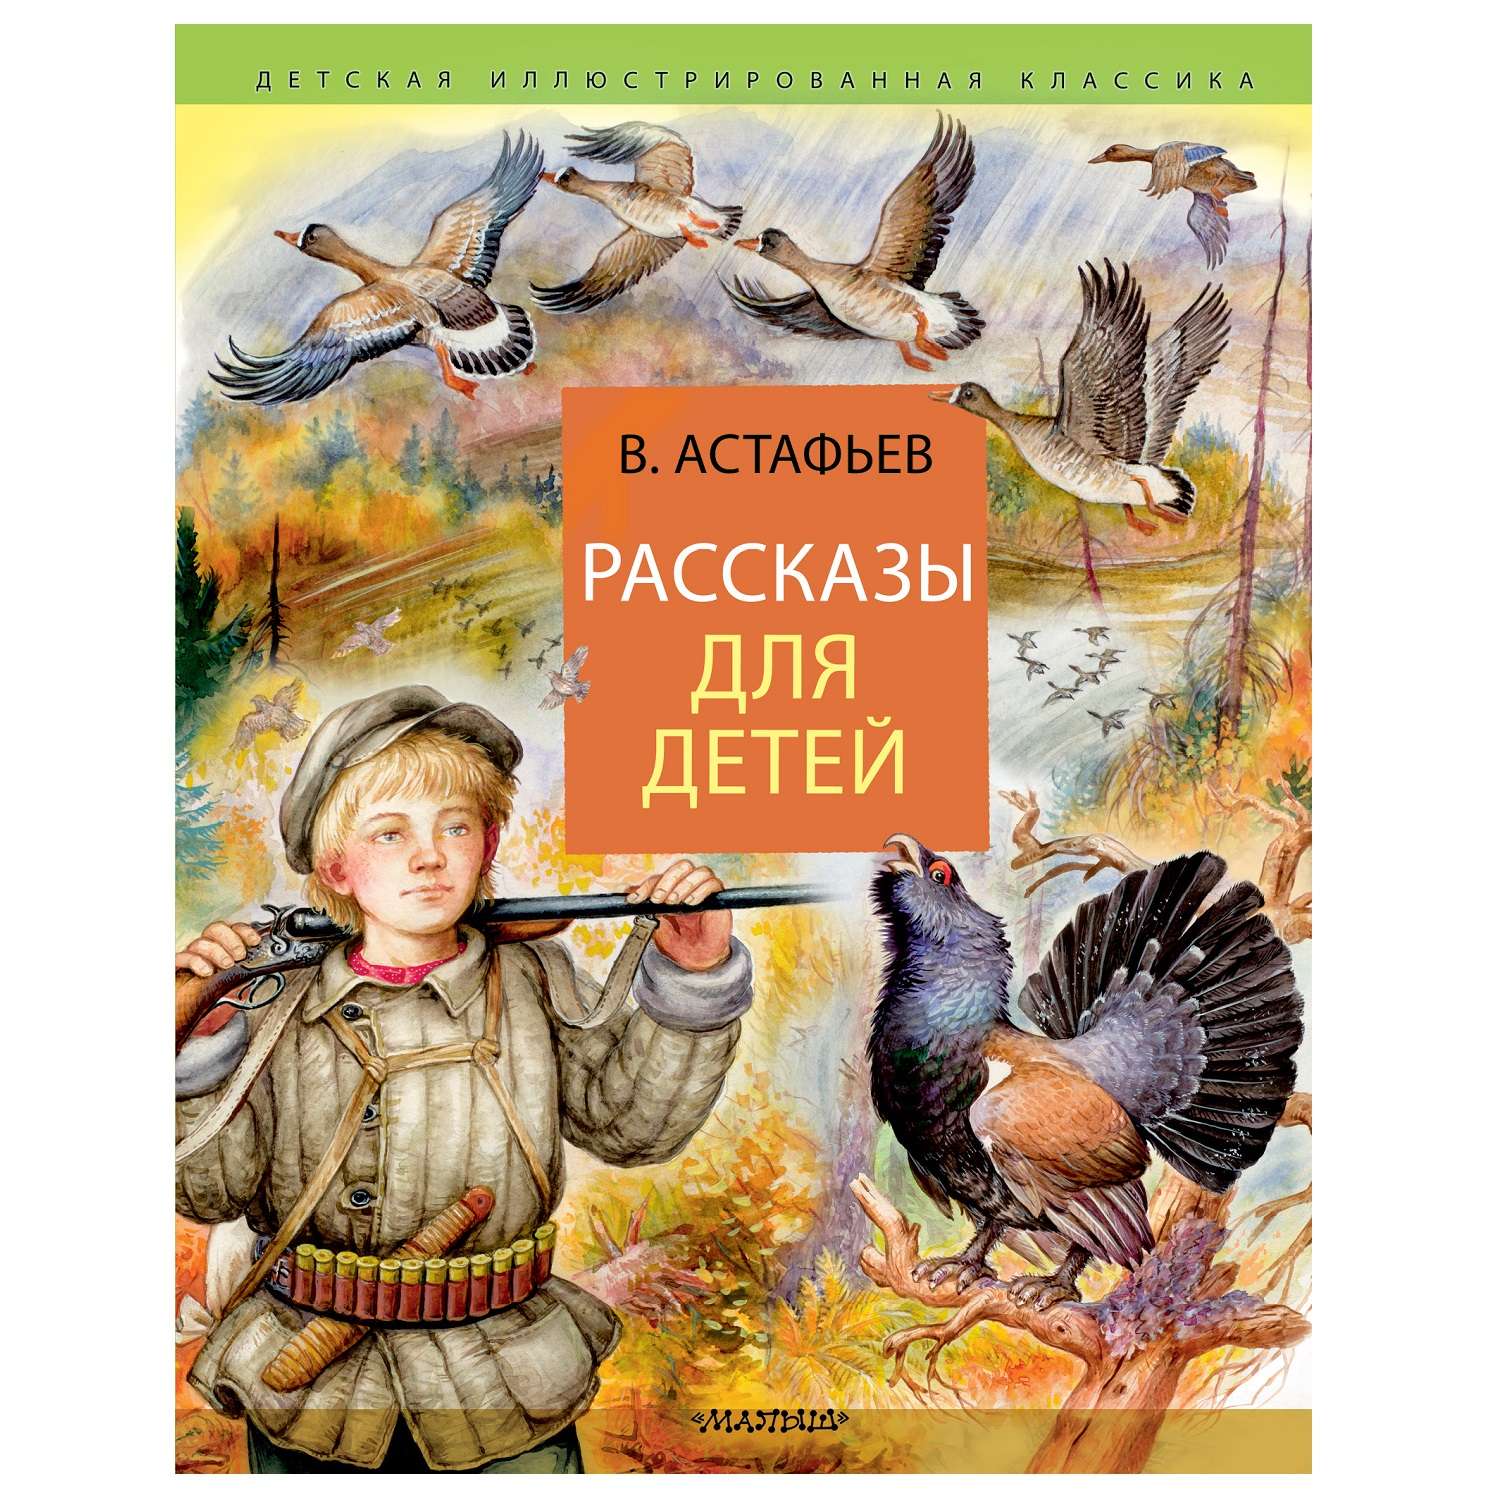 Книга АСТ Рассказы для детей детская иллюстрированная классика - фото 1